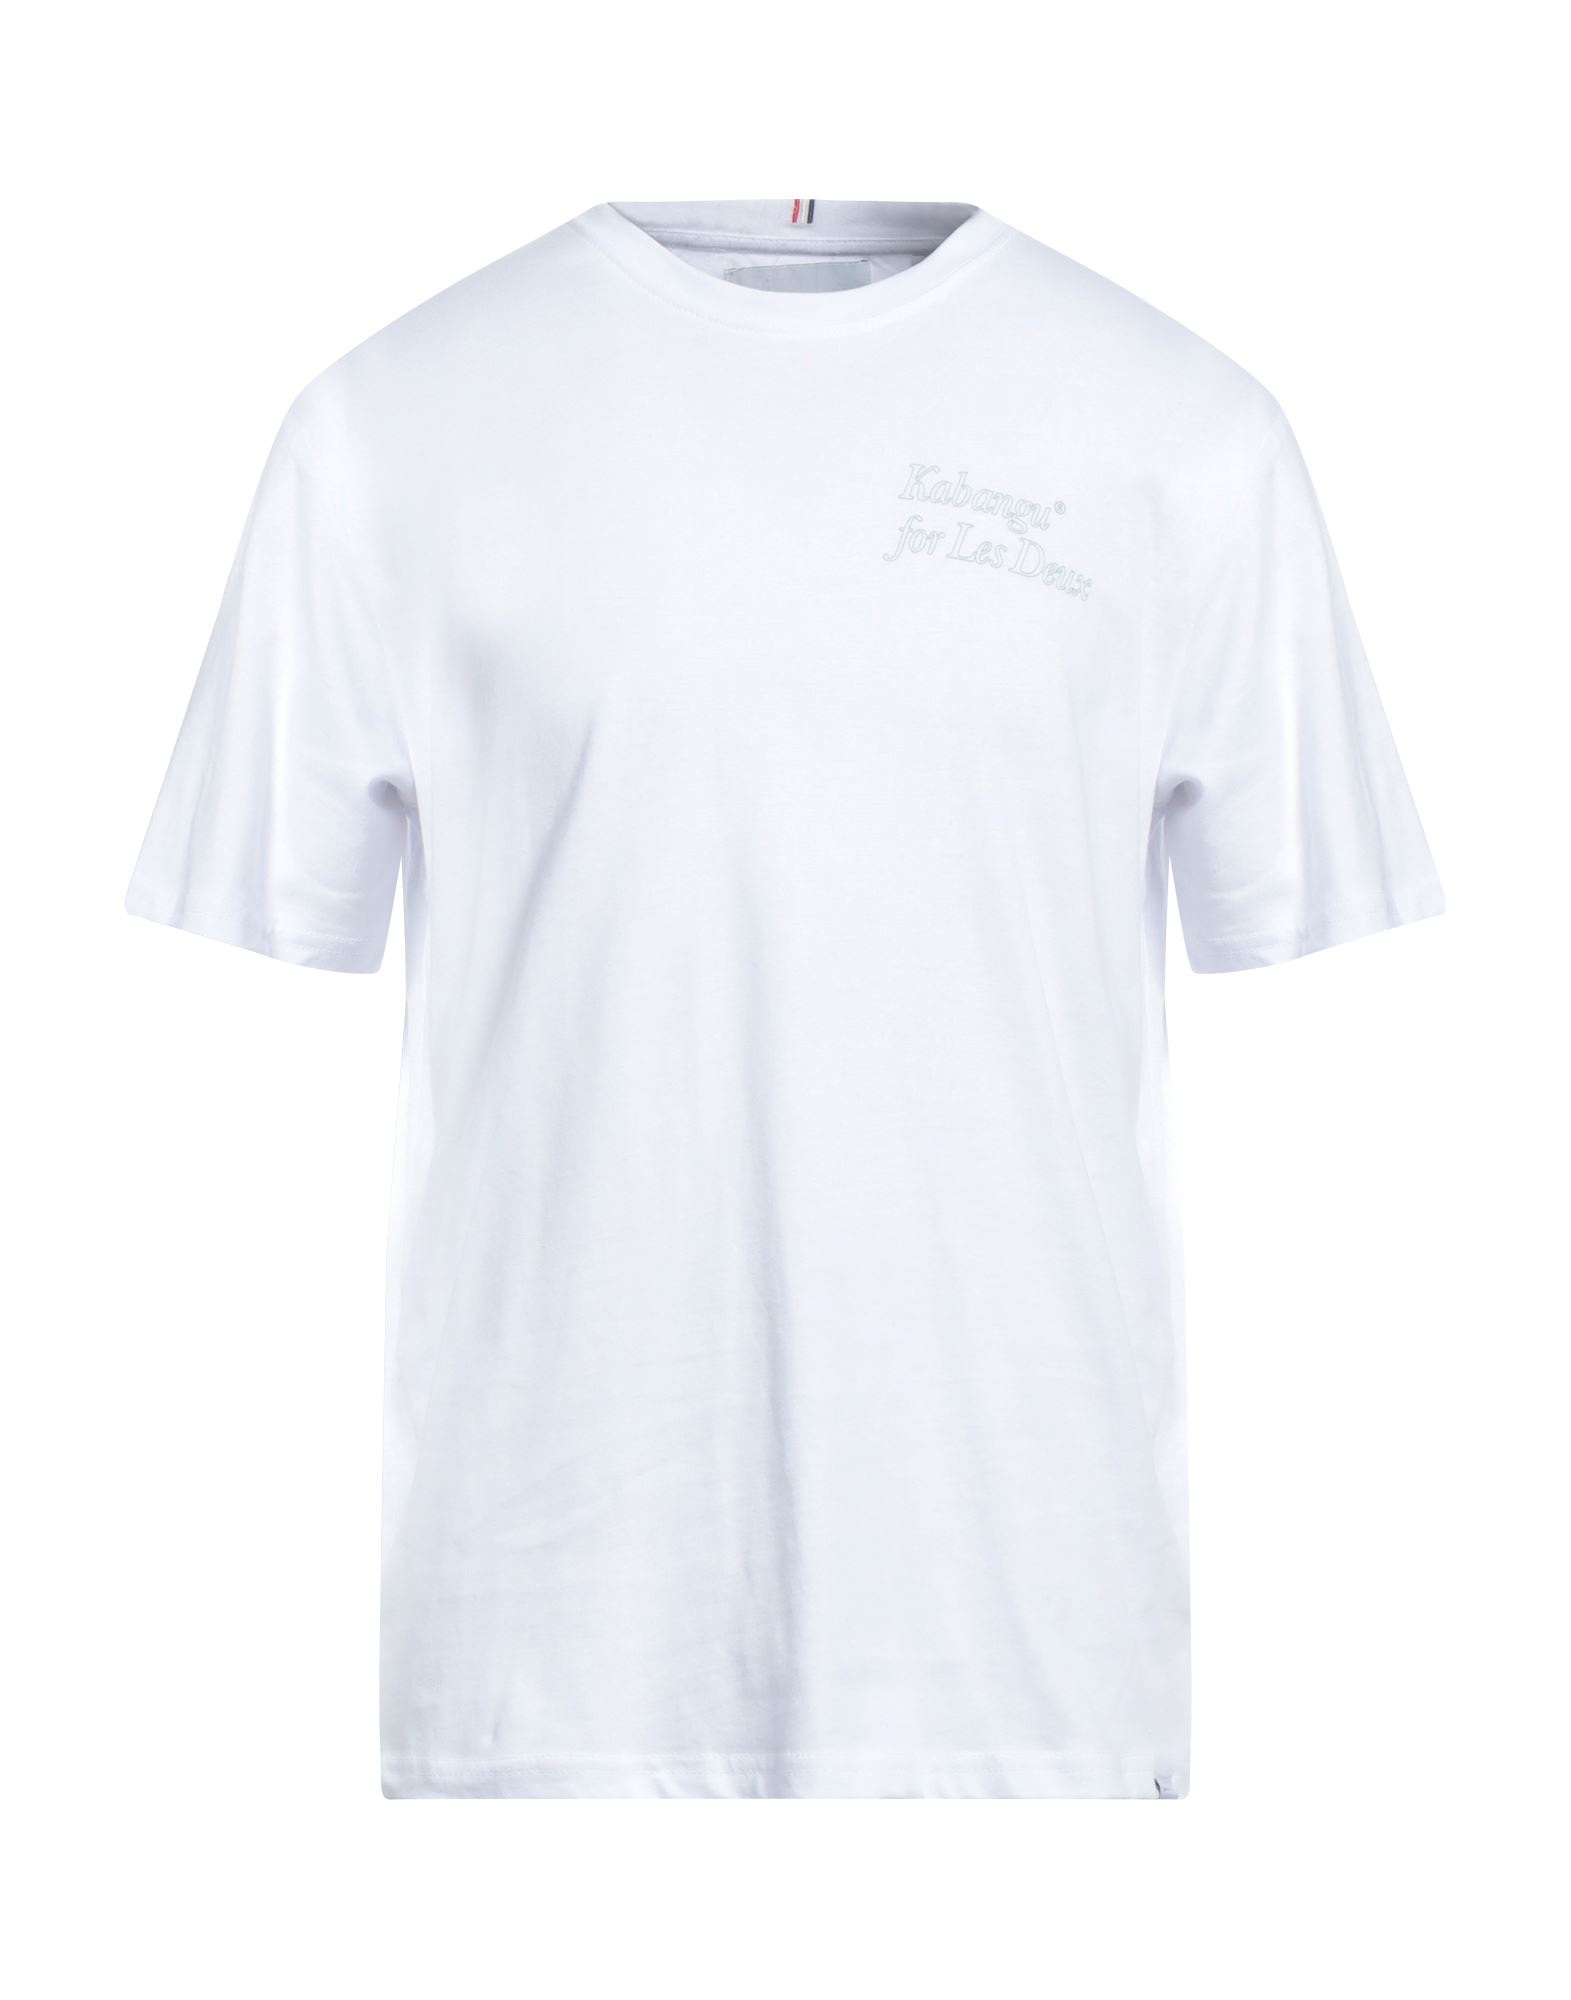 Shop Les Deux Man T-shirt White Size L Cotton